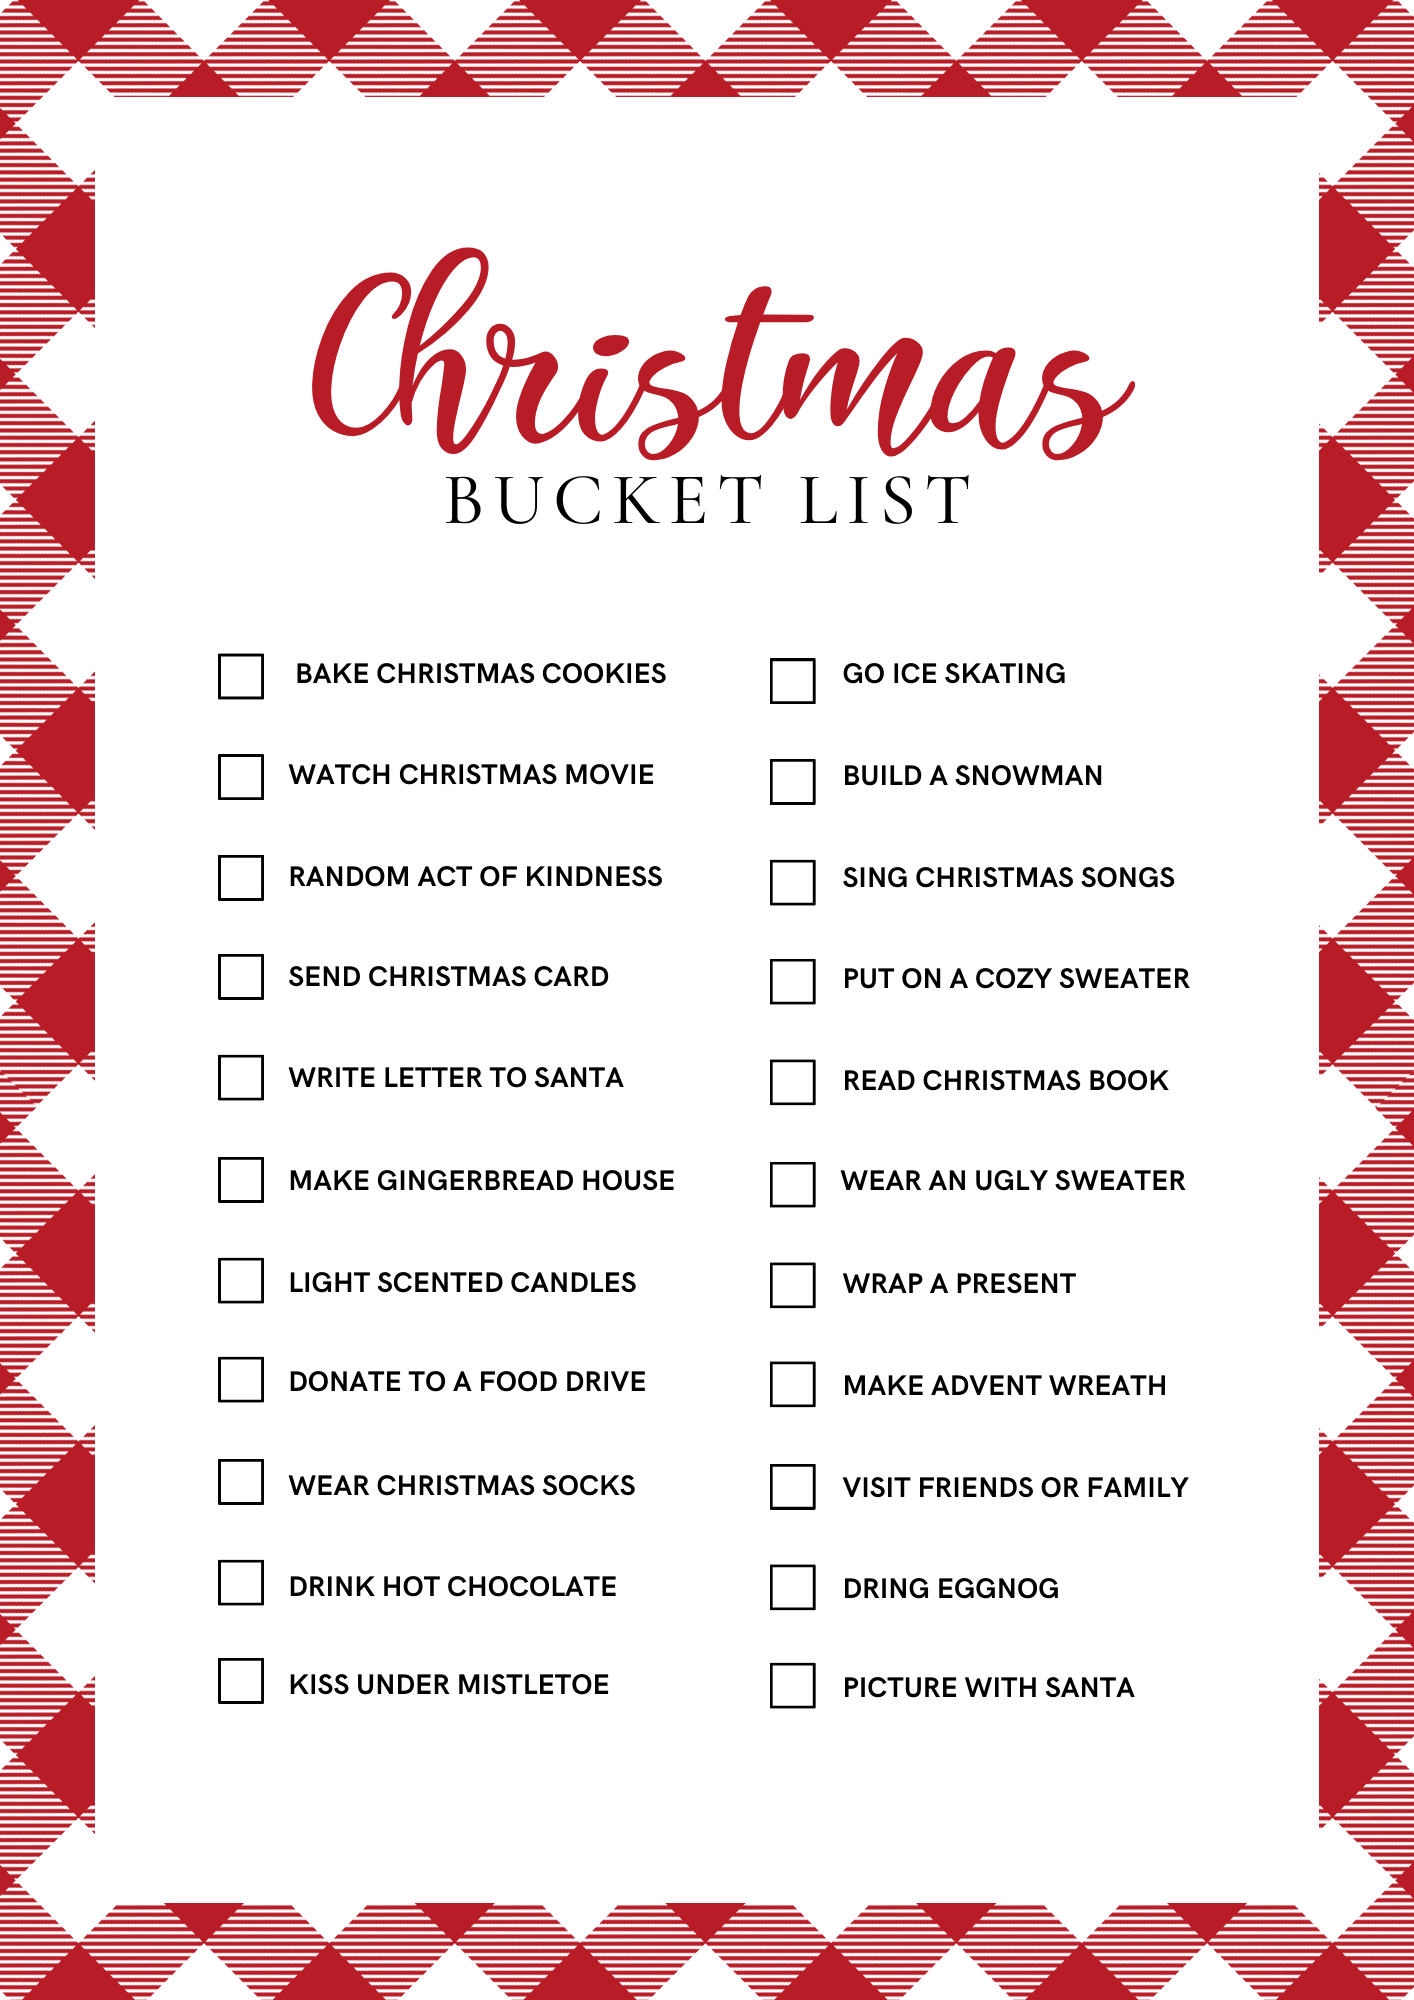 Christmas Bucket List Printable - Ultimate Free Holiday Fun ...